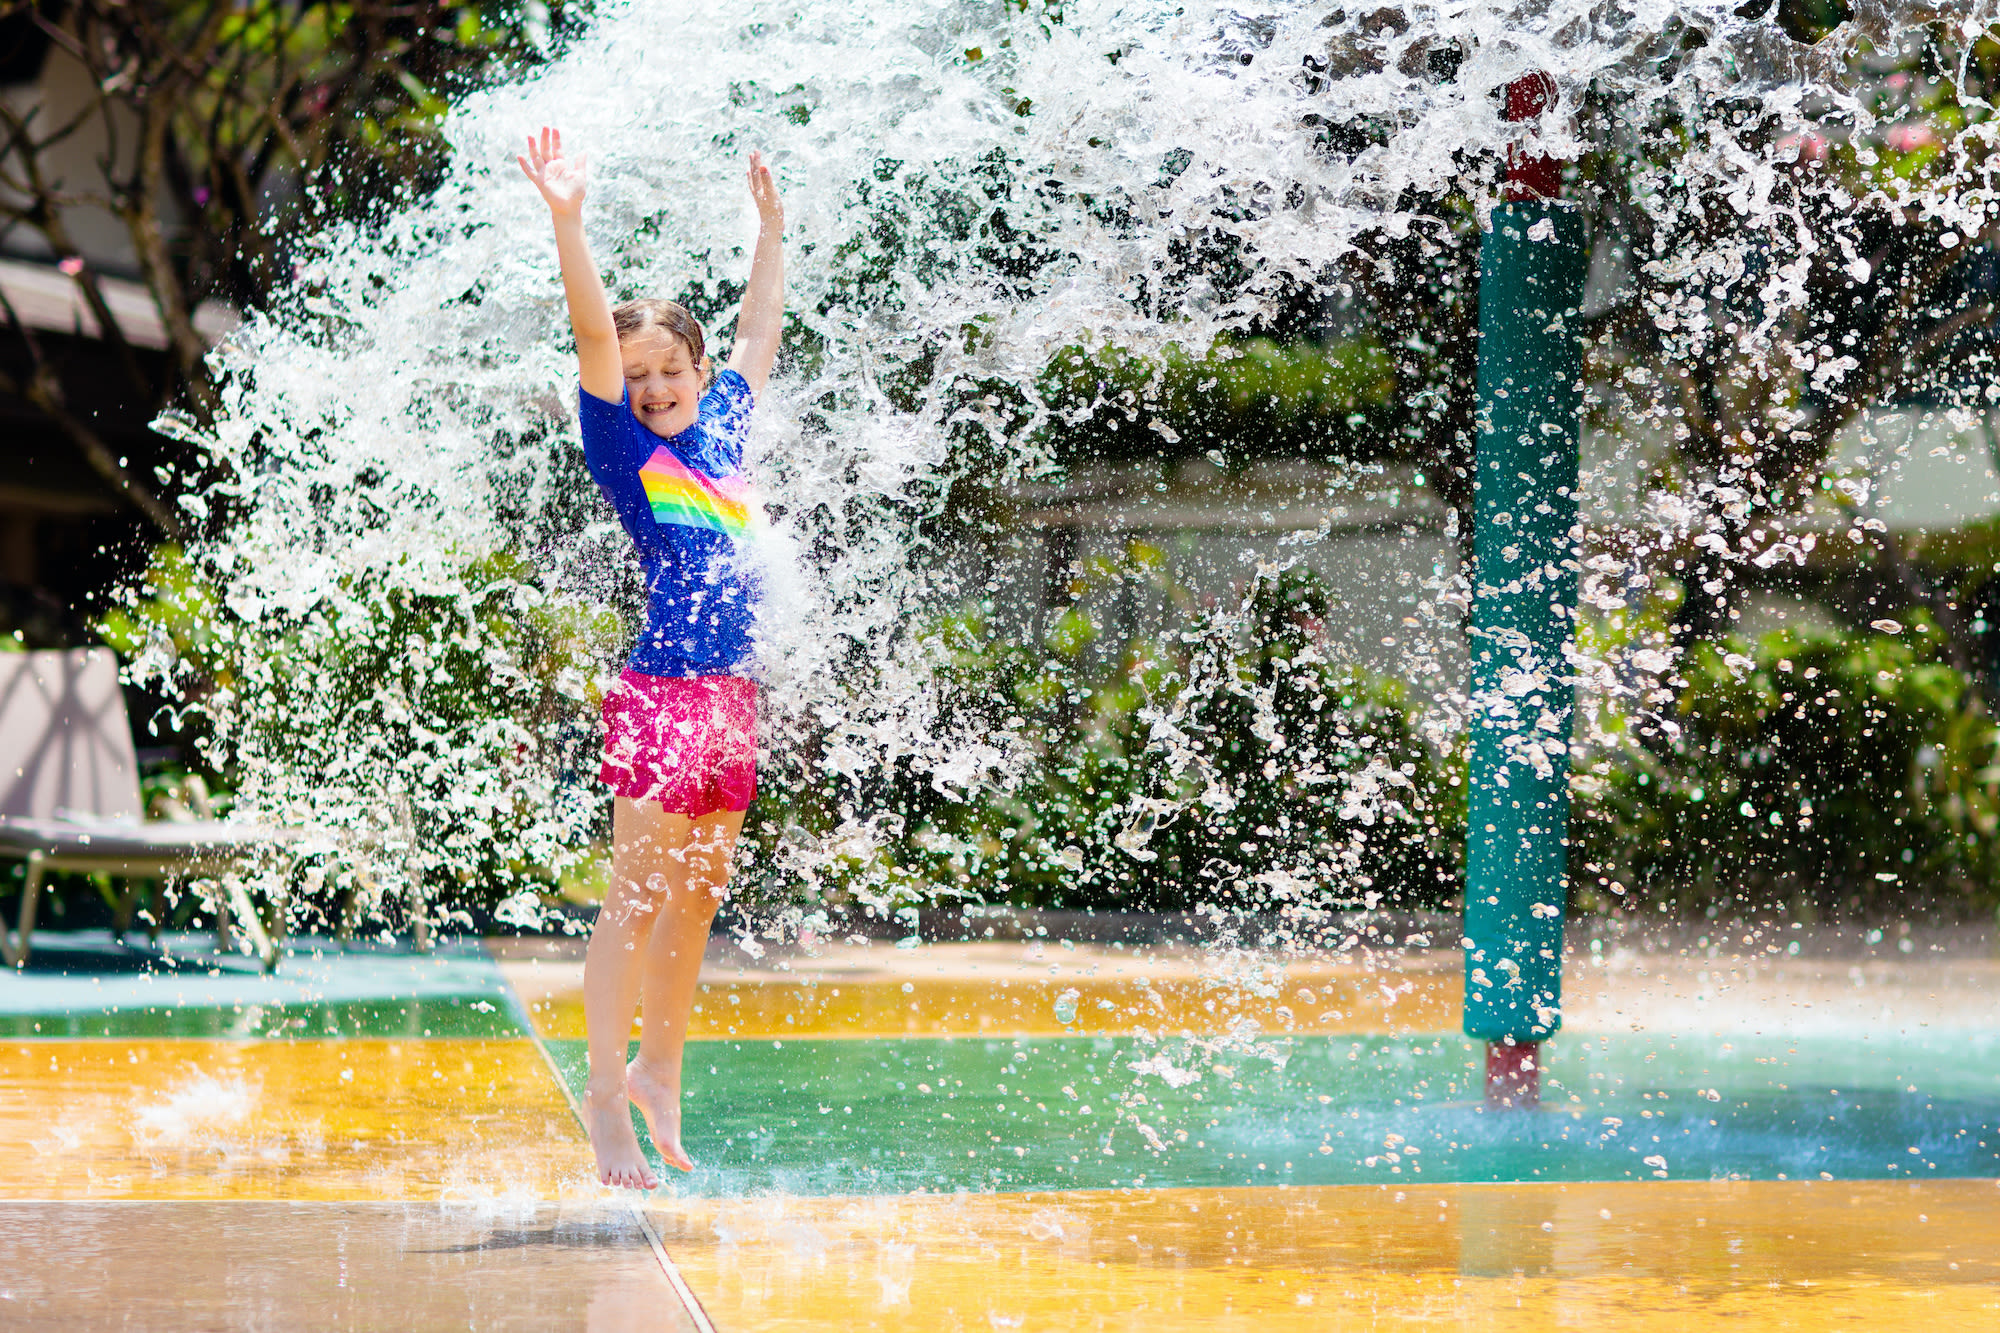 Kind speelt met water in een openbaar zwembad. Foto: AdobeStock / famveldman.